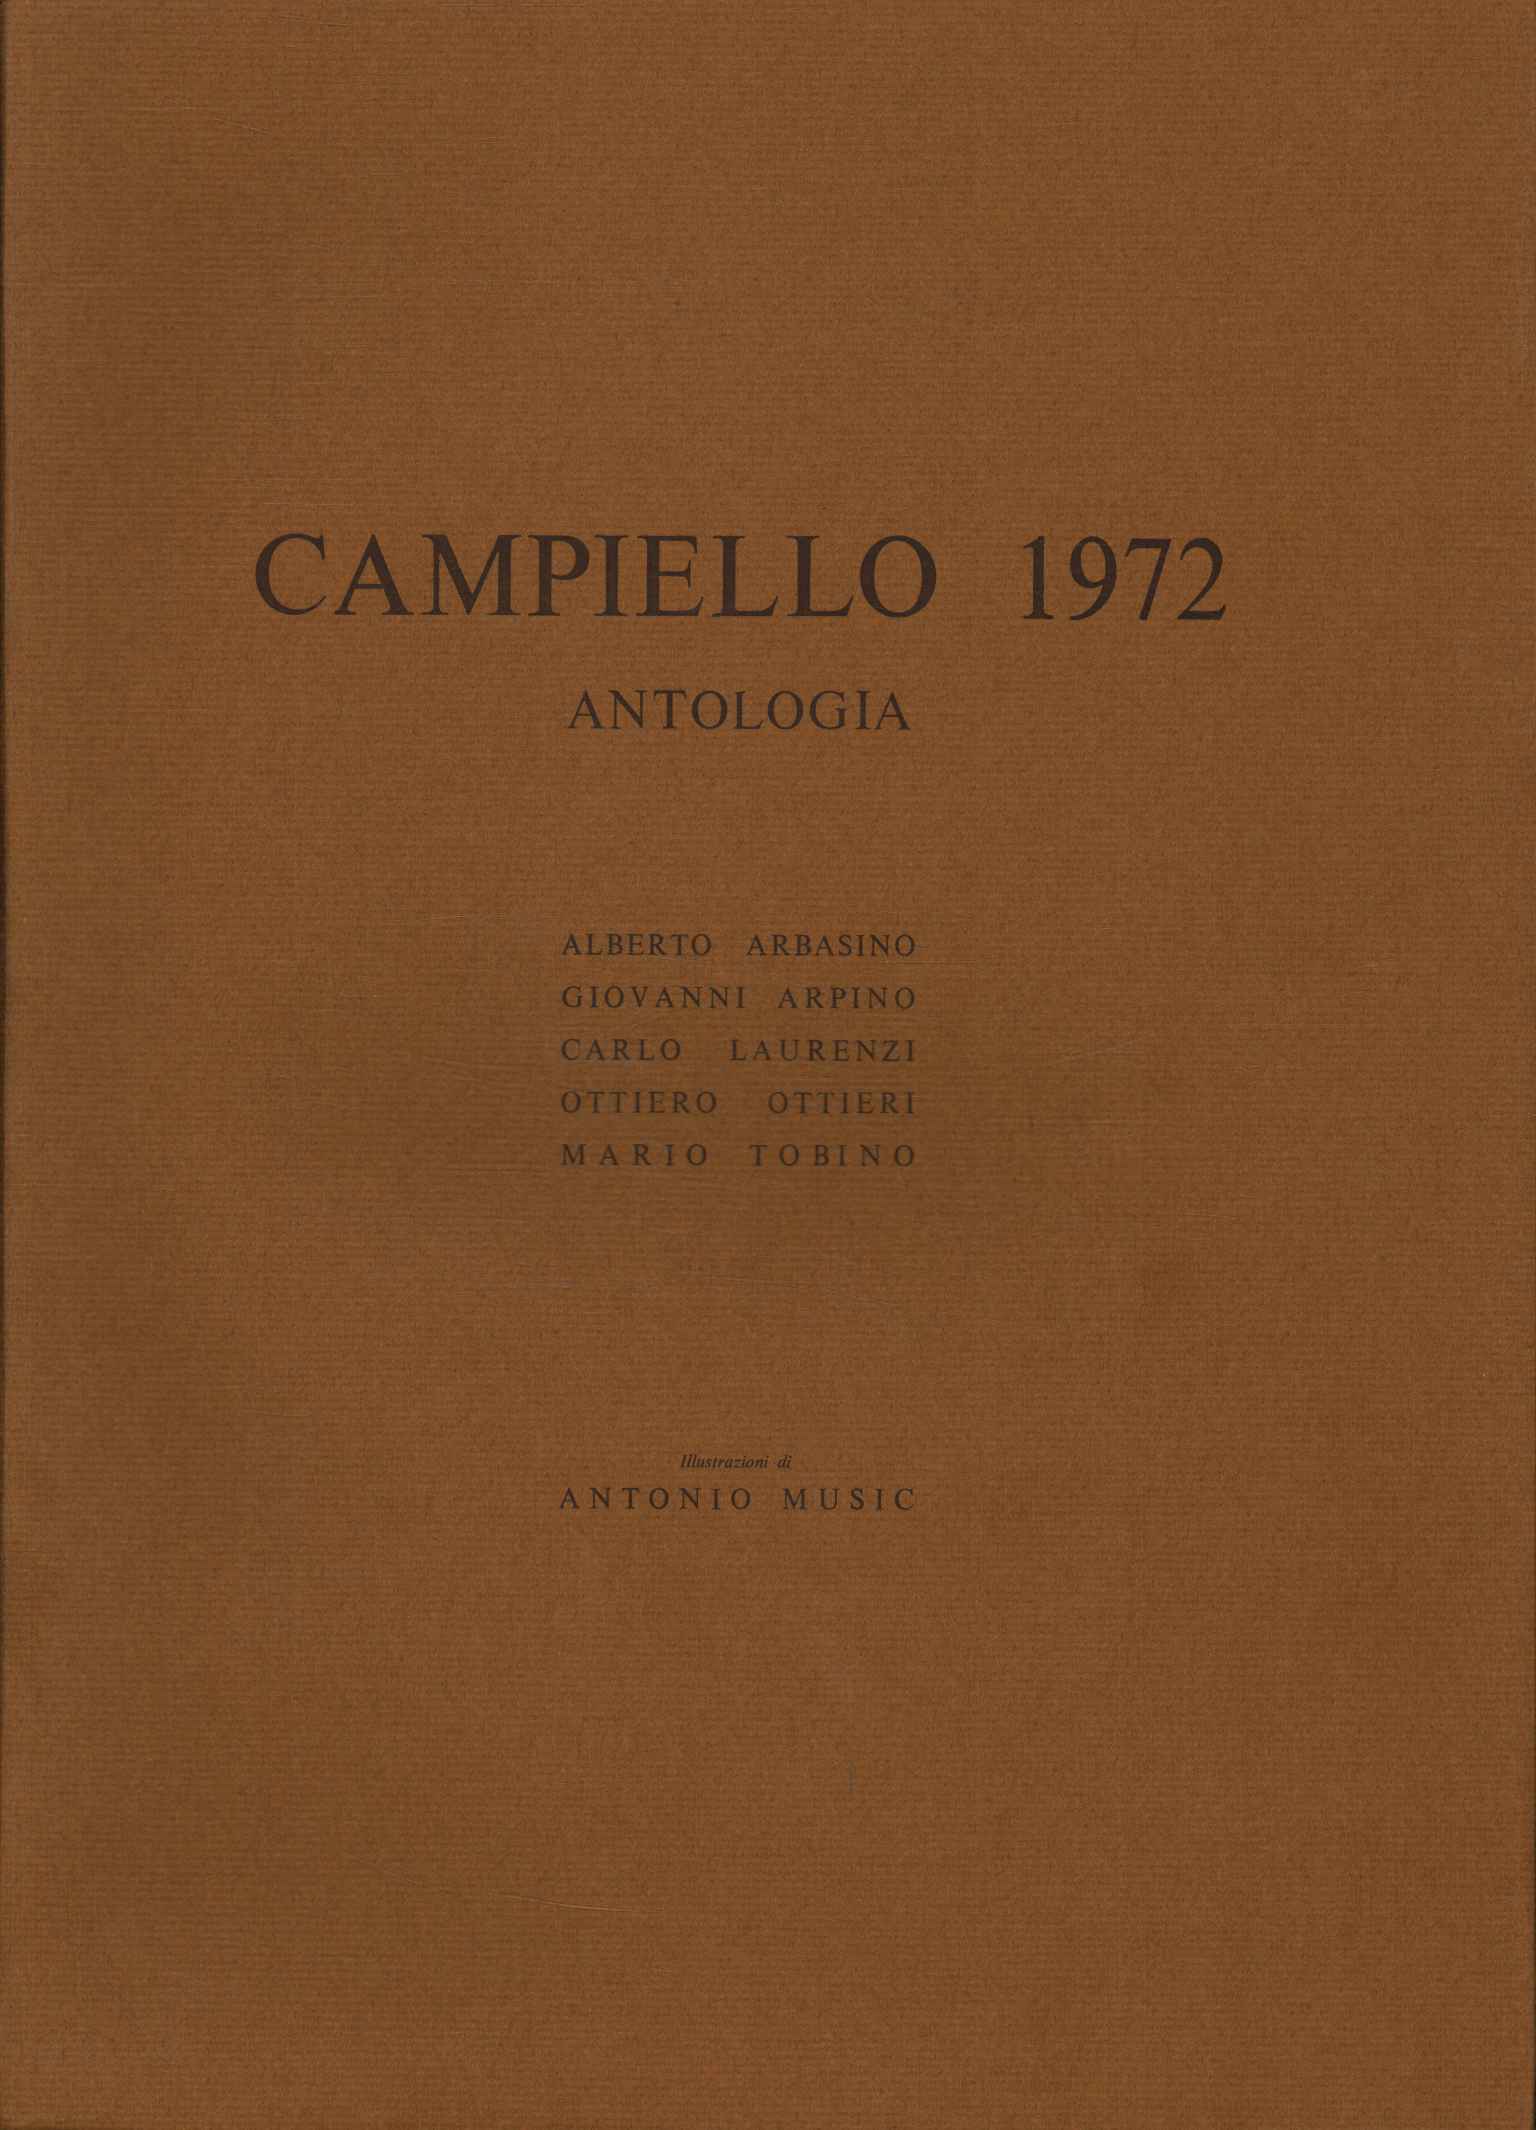 Antologia del Campiello 1972